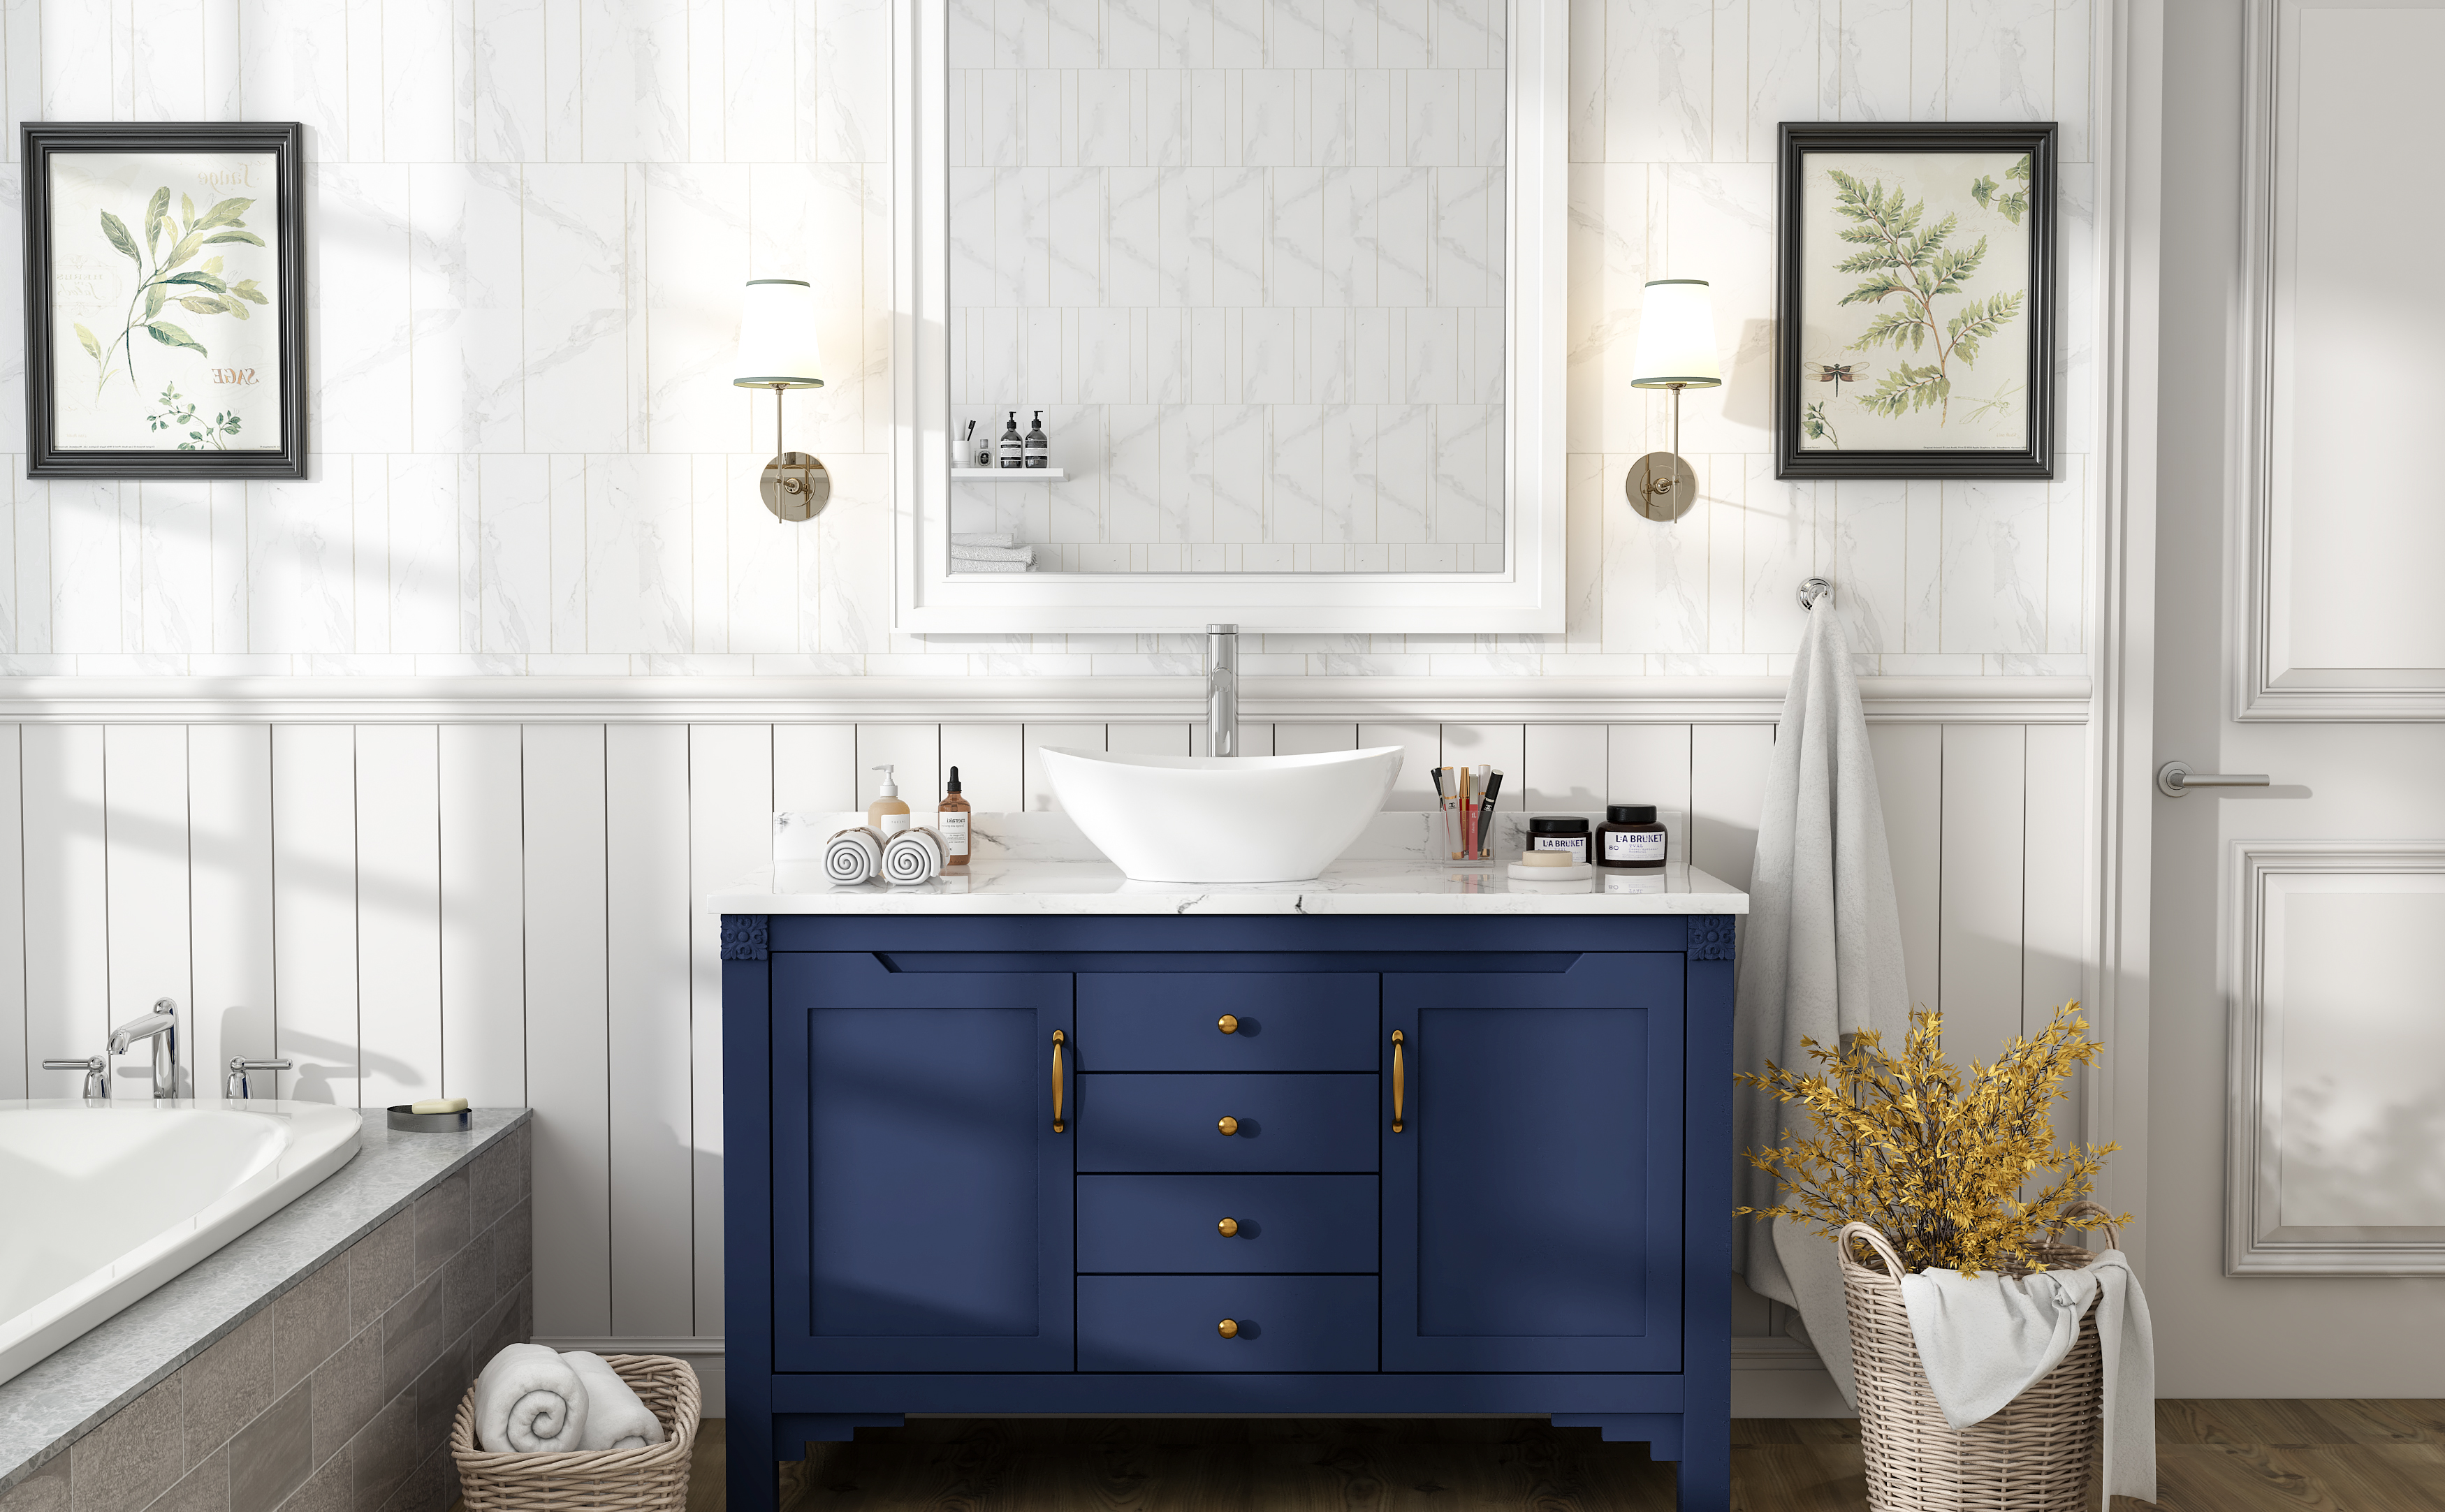 MEJE 16×13-Inch Oval White Ceramic Vessel Sink,Modern Egg Shape Bowl, Above Counter Bathroom Vanity Sink